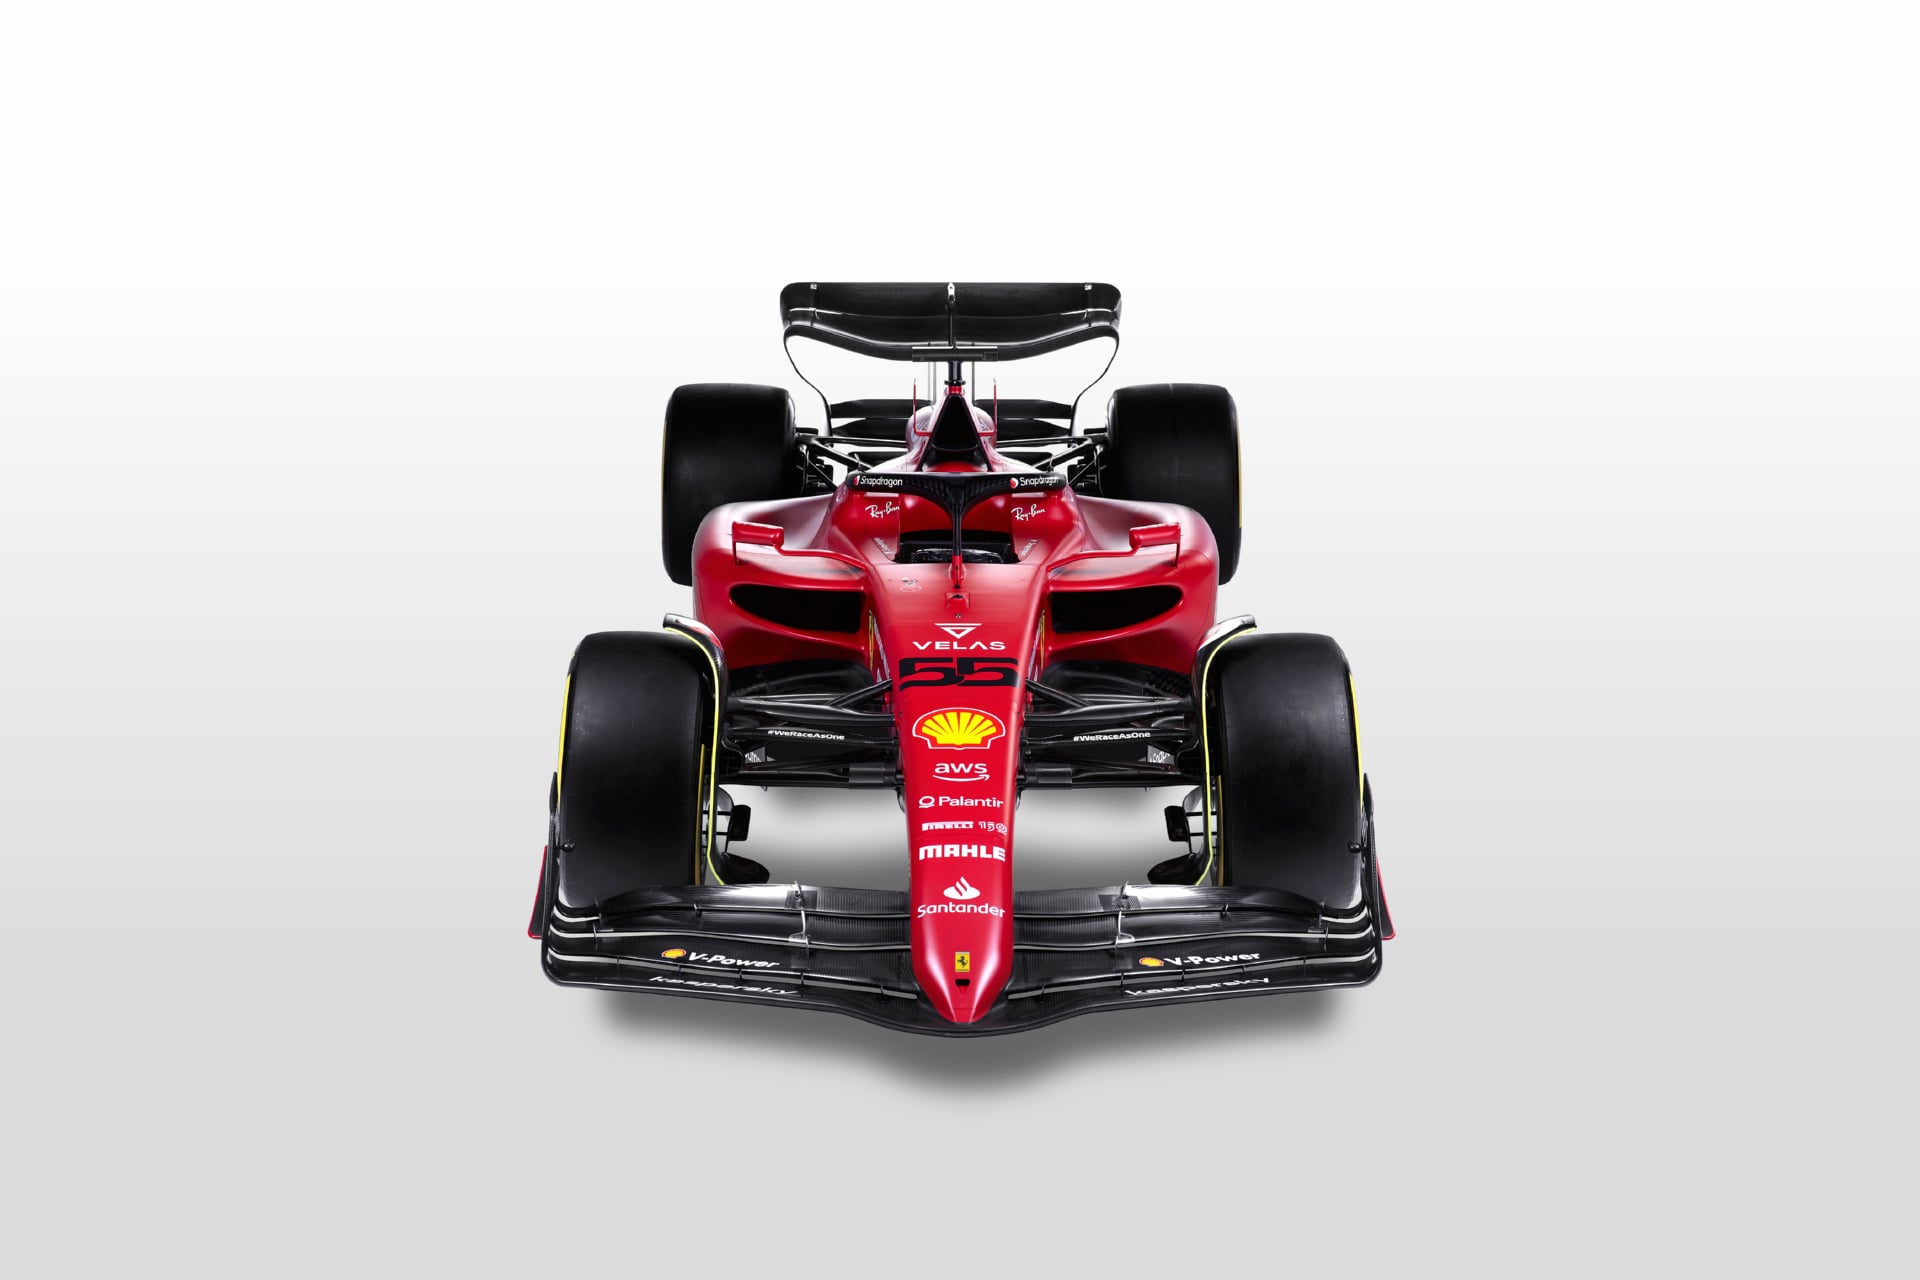 Ferrari F1-75 at 1152 x 864 size wallpapers HD quality